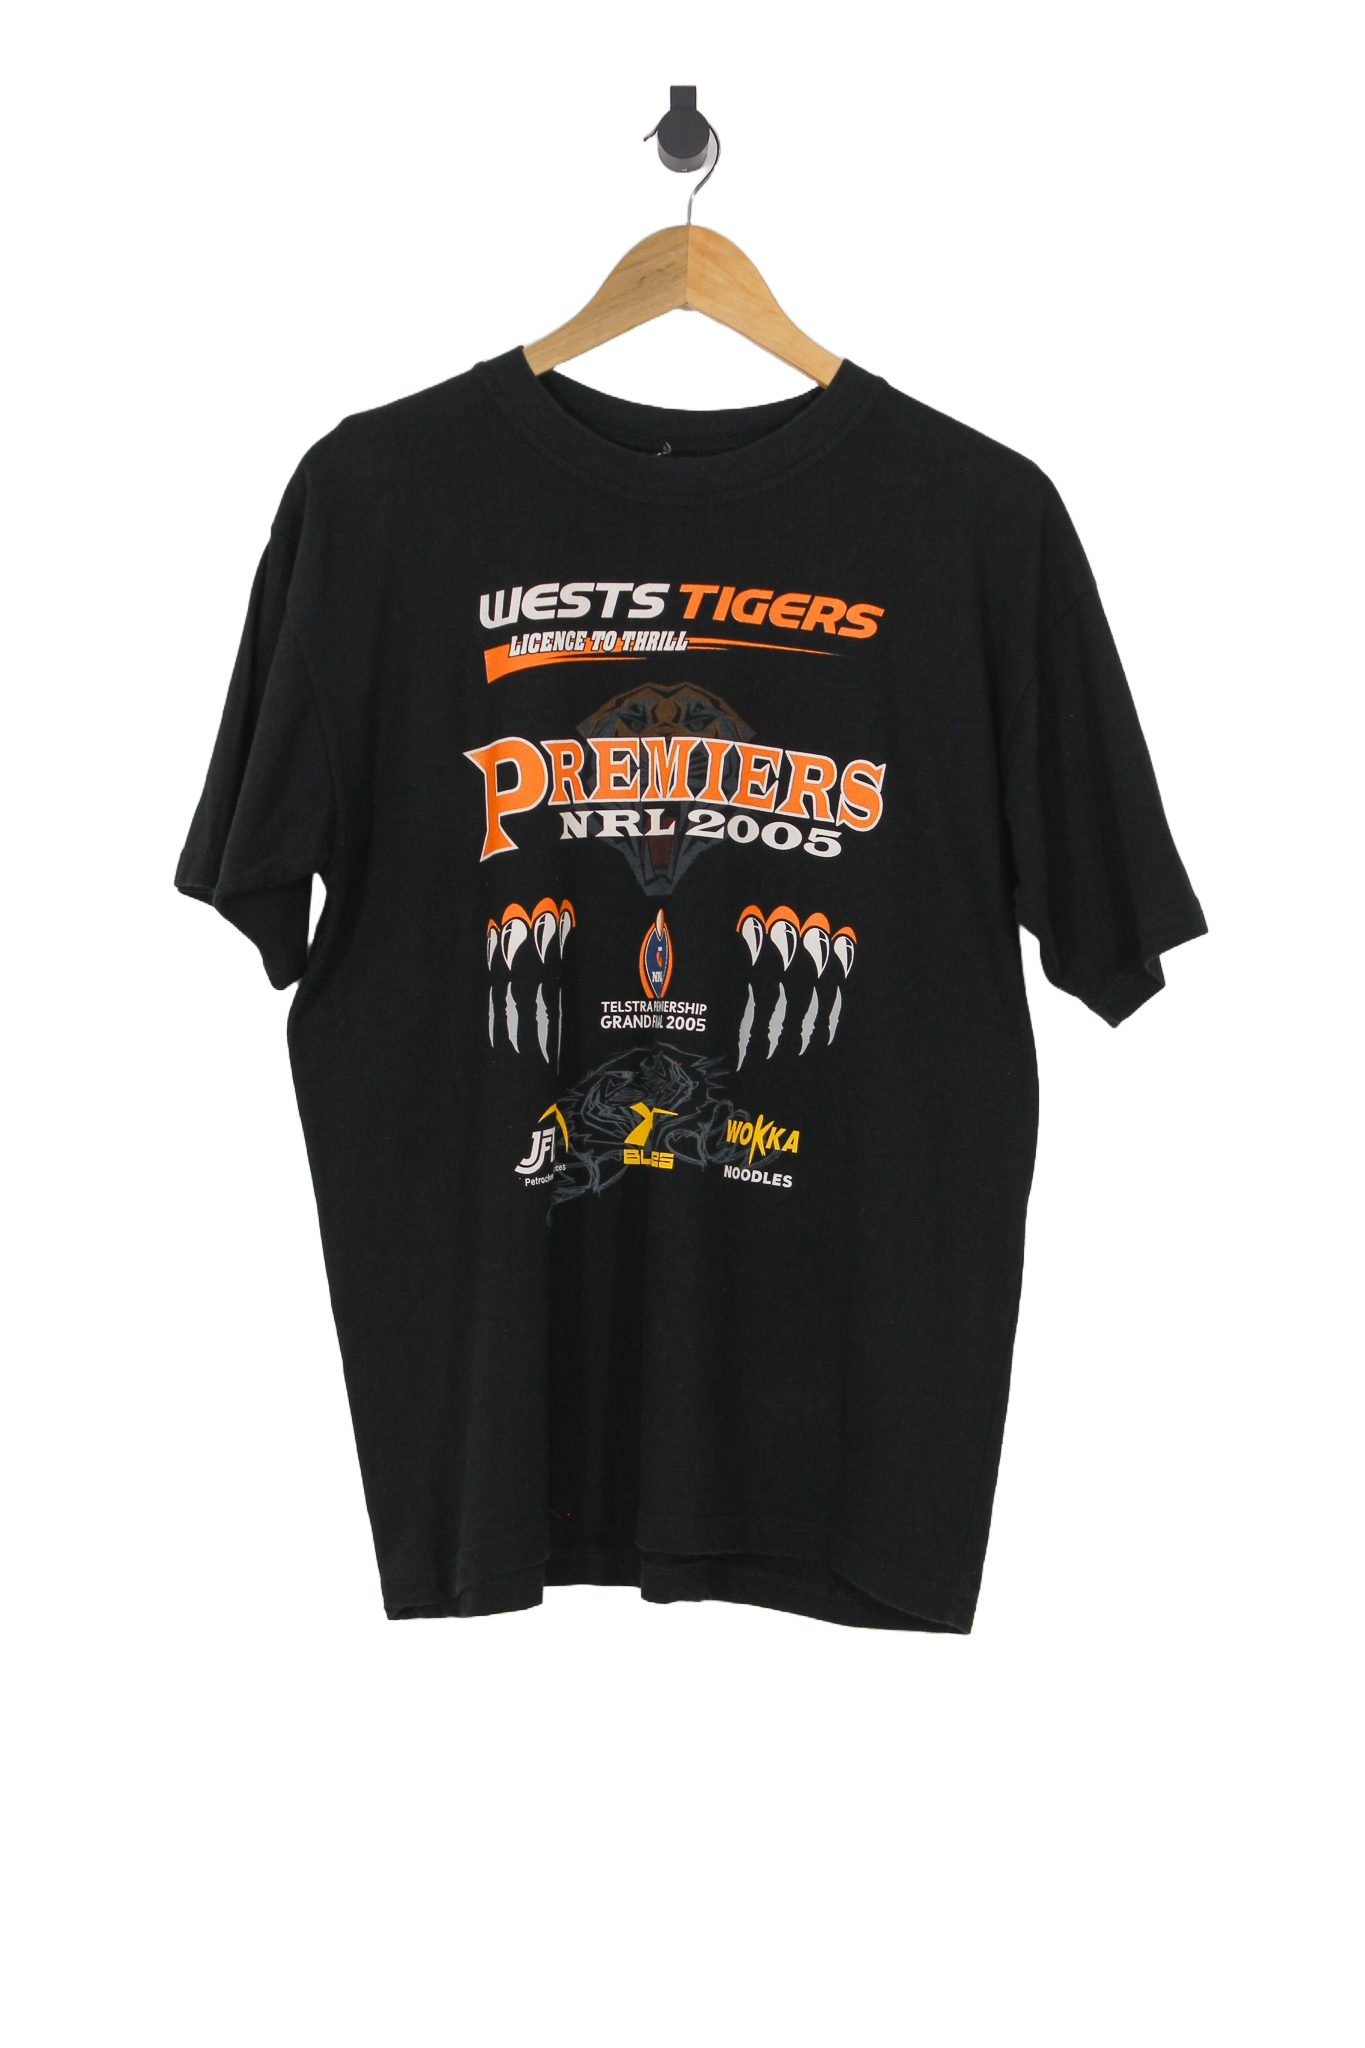 2005 Wests Tigers Premiers NRL T-Shirt - L